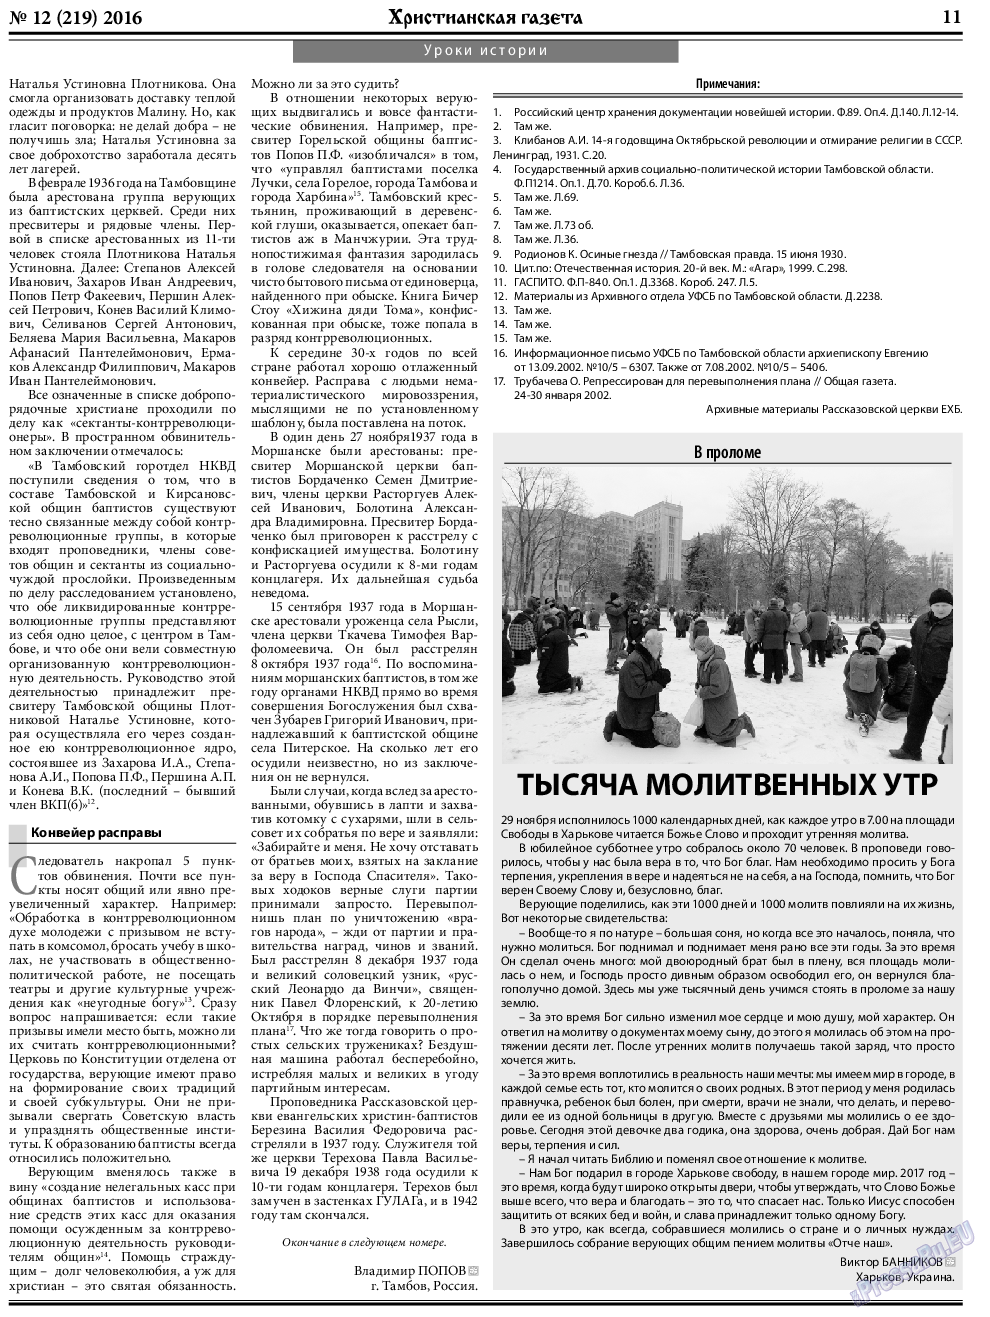 Христианская газета (газета). 2016 год, номер 12, стр. 11